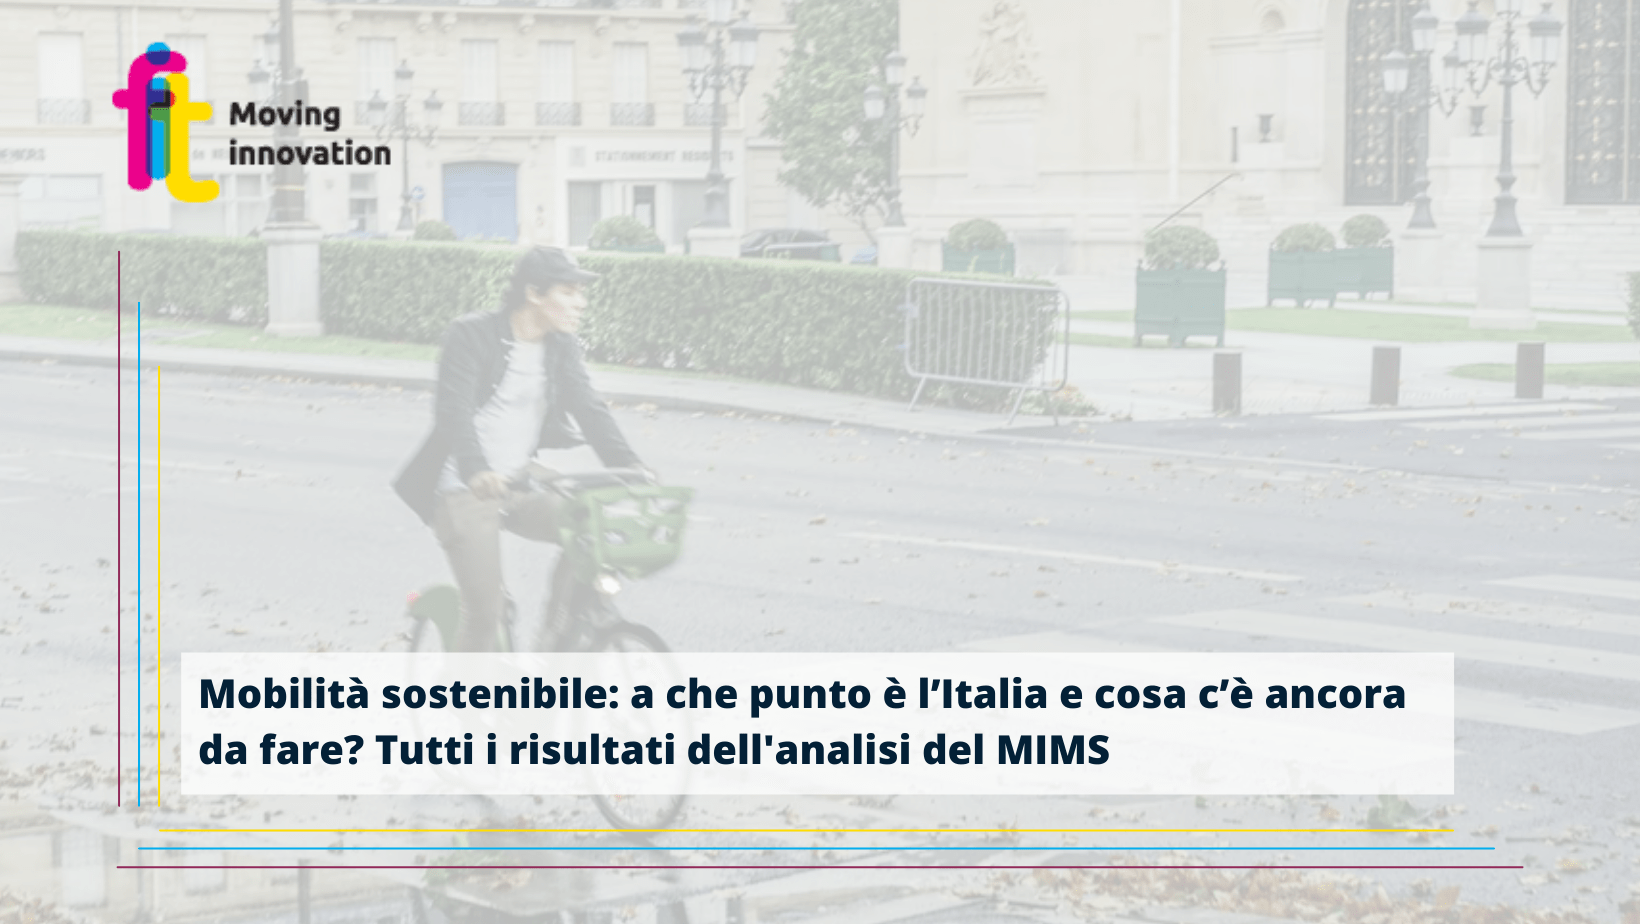 Mobilità sostenibile: a che punto è l’Italia e cosa ancora c’è da fare? L’analisi del MIMS nel Rapporto “Verso un nuovo modello di mobilità locale sostenibile”